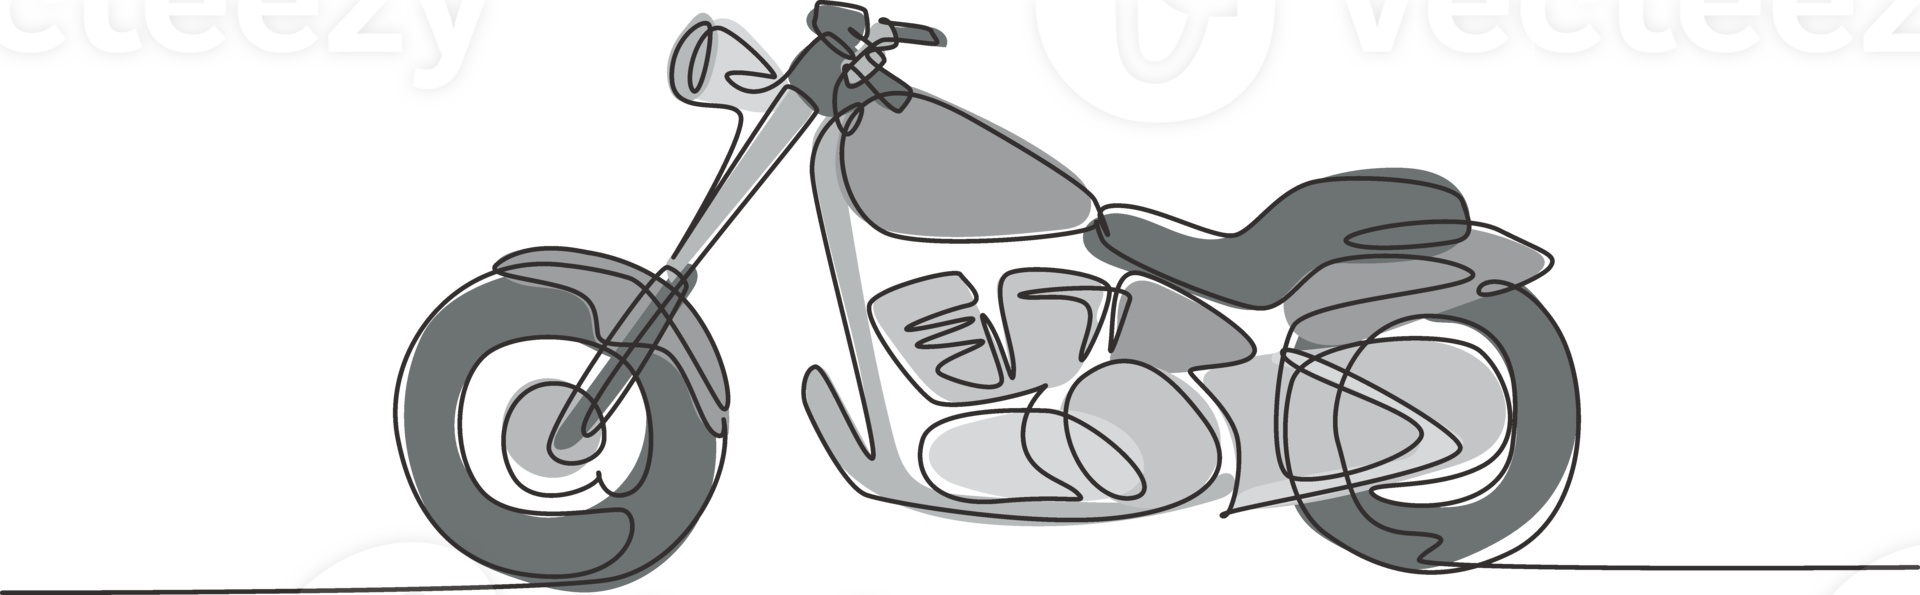 solteiro contínuo linha desenhando do velho clássico vintage motocicleta símbolo. retro moto transporte conceito 1 linha gráfico desenhar Projeto ilustração png